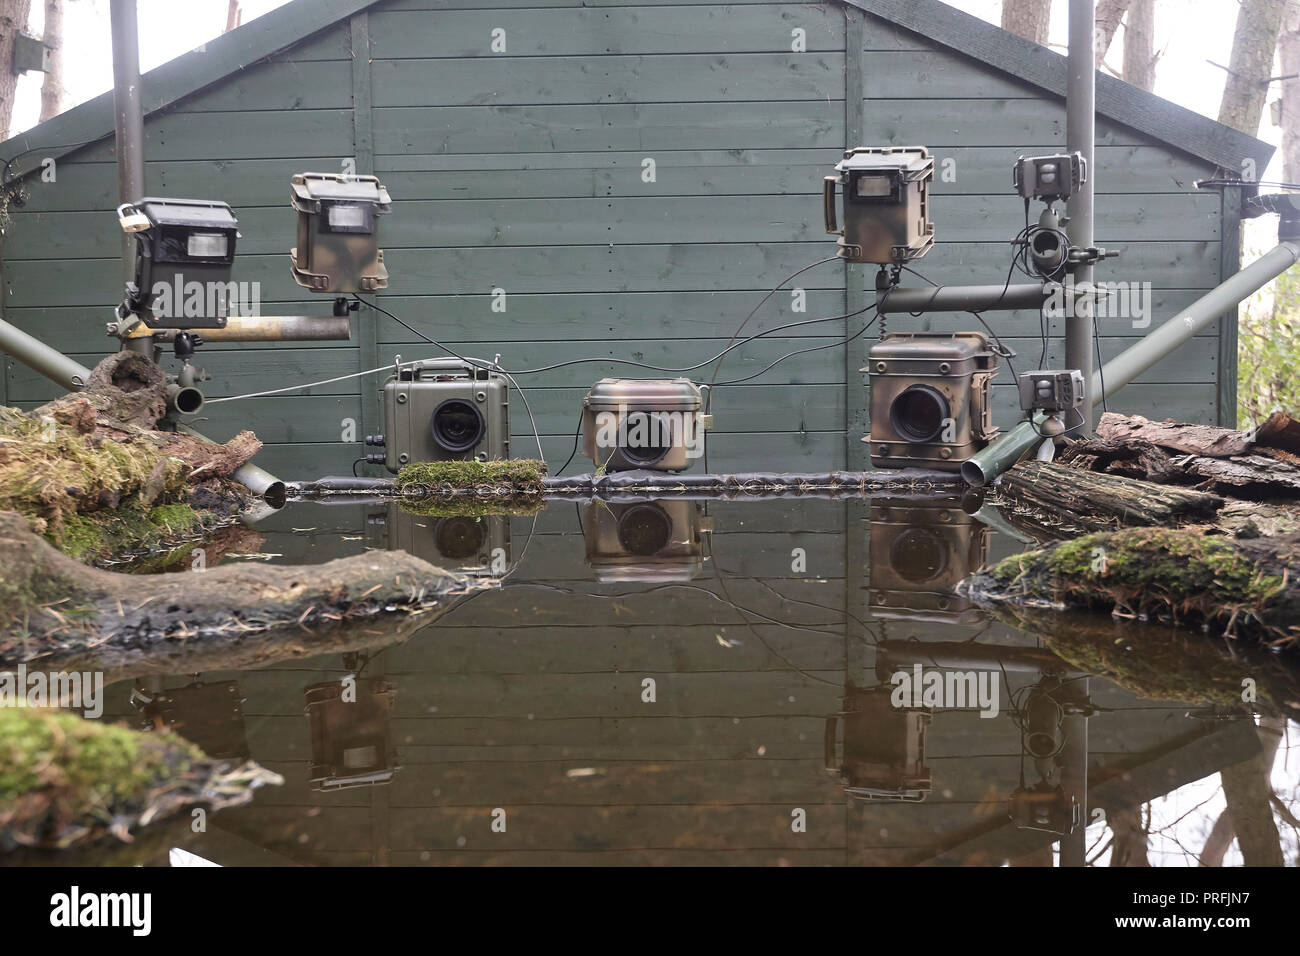 La fauna selvatica fotocamera reflex digitale attrezzatura di trappola comprendente tre telecamere, tre speedlight lampeggia un sensore remoto su un laghetto di riflessione, East Yorkshire, Regno Unito. Foto Stock